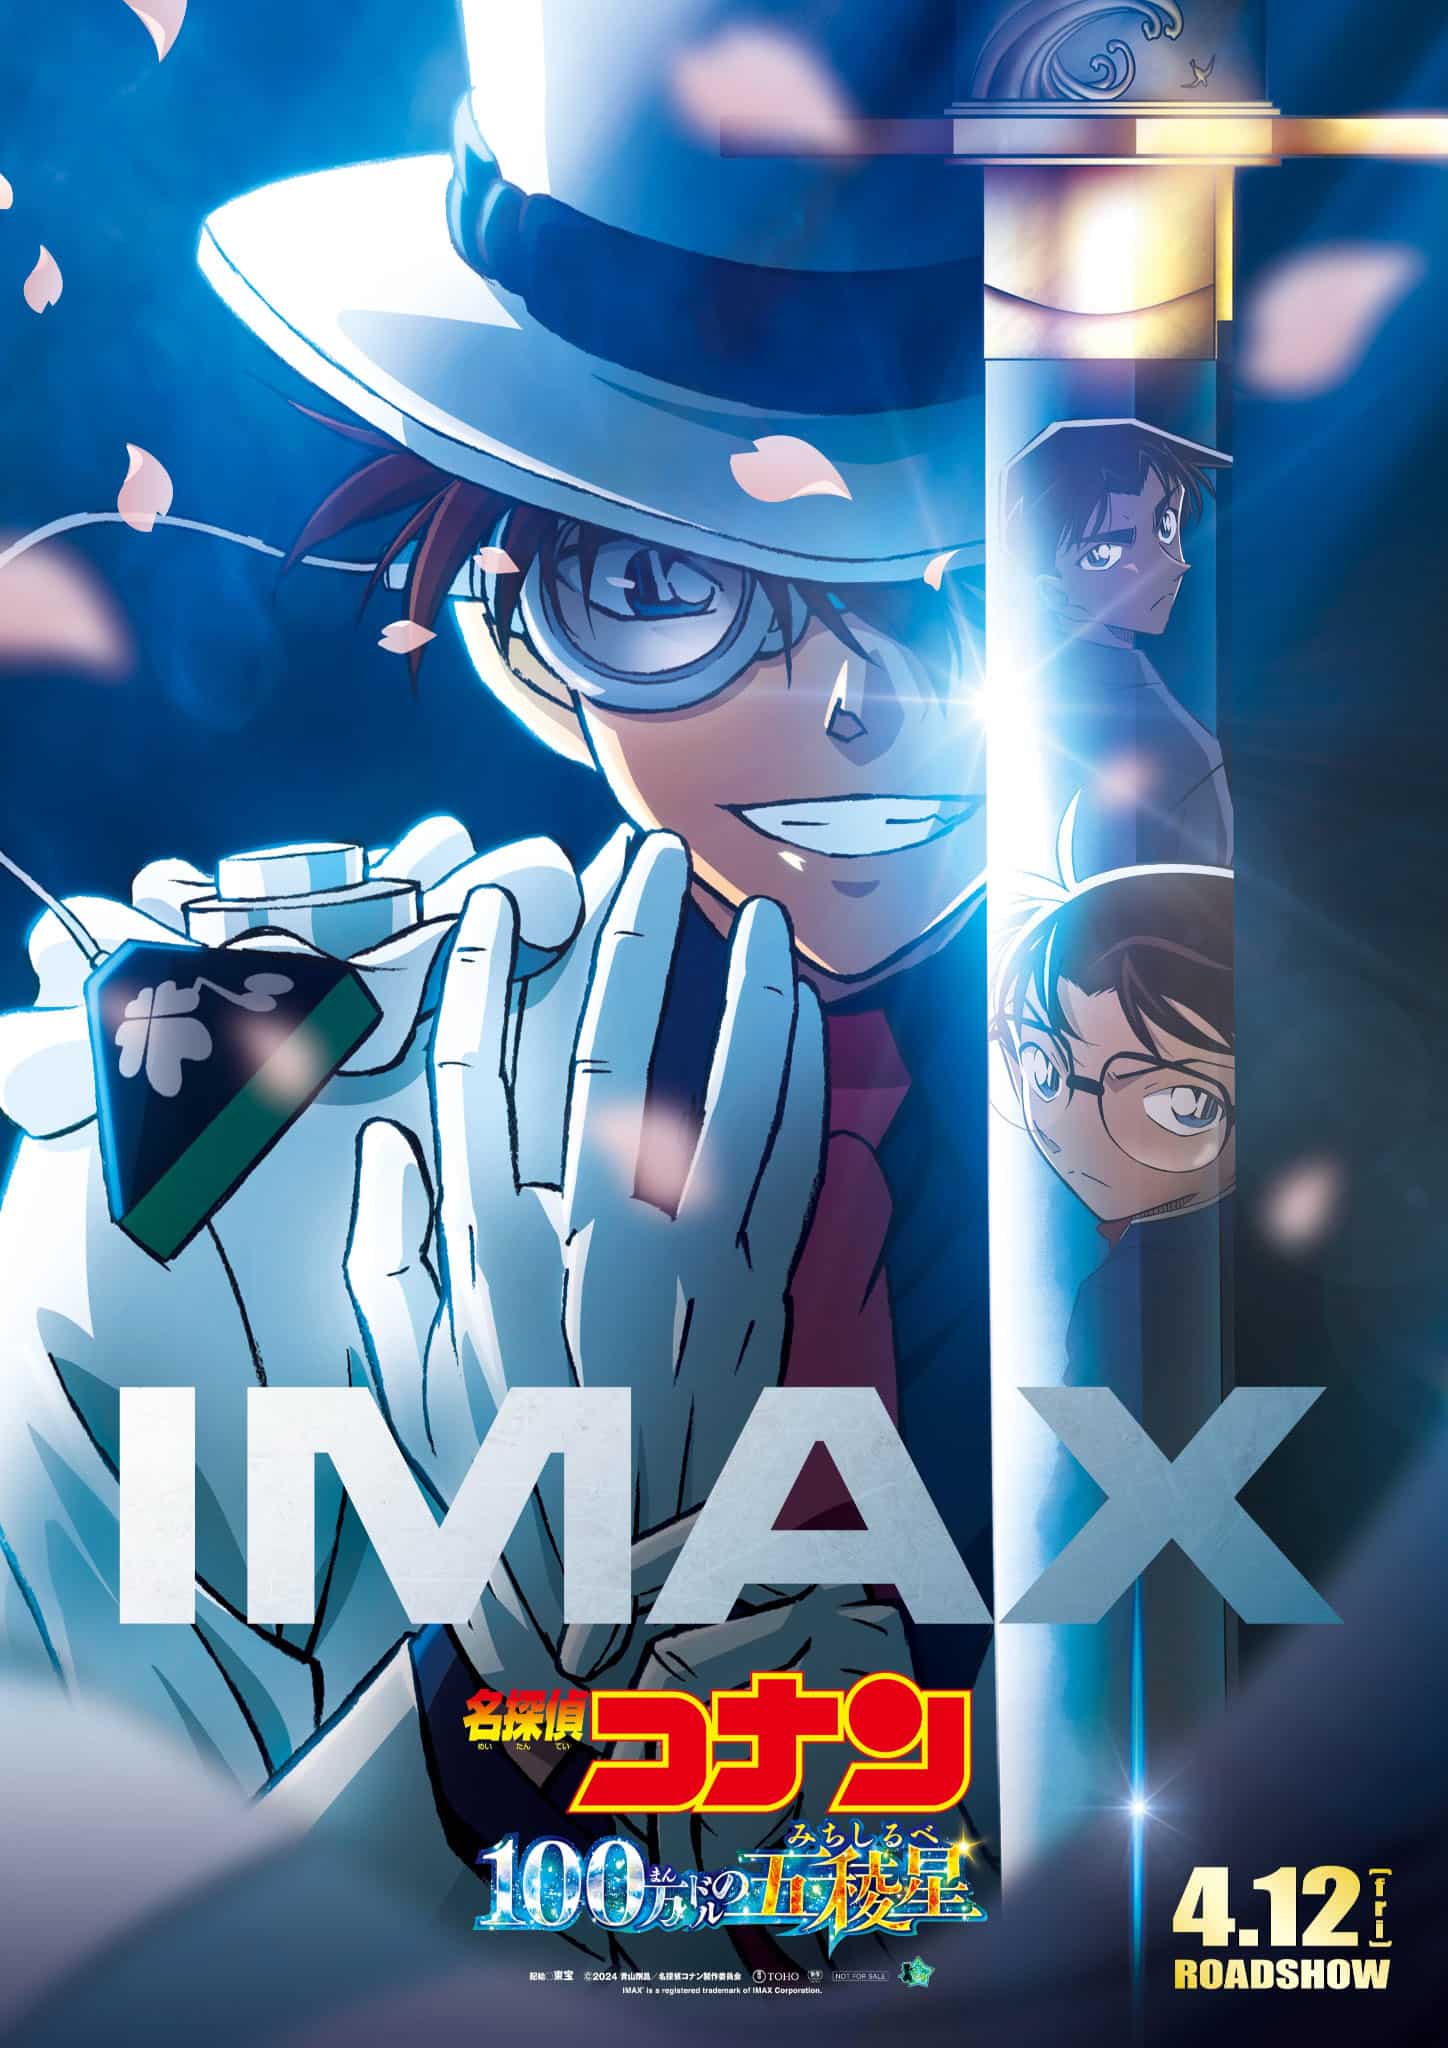 Visuel spécial IMAX pour le film Détective Conan 27 : L'étoile à 1 Million de Dollars.